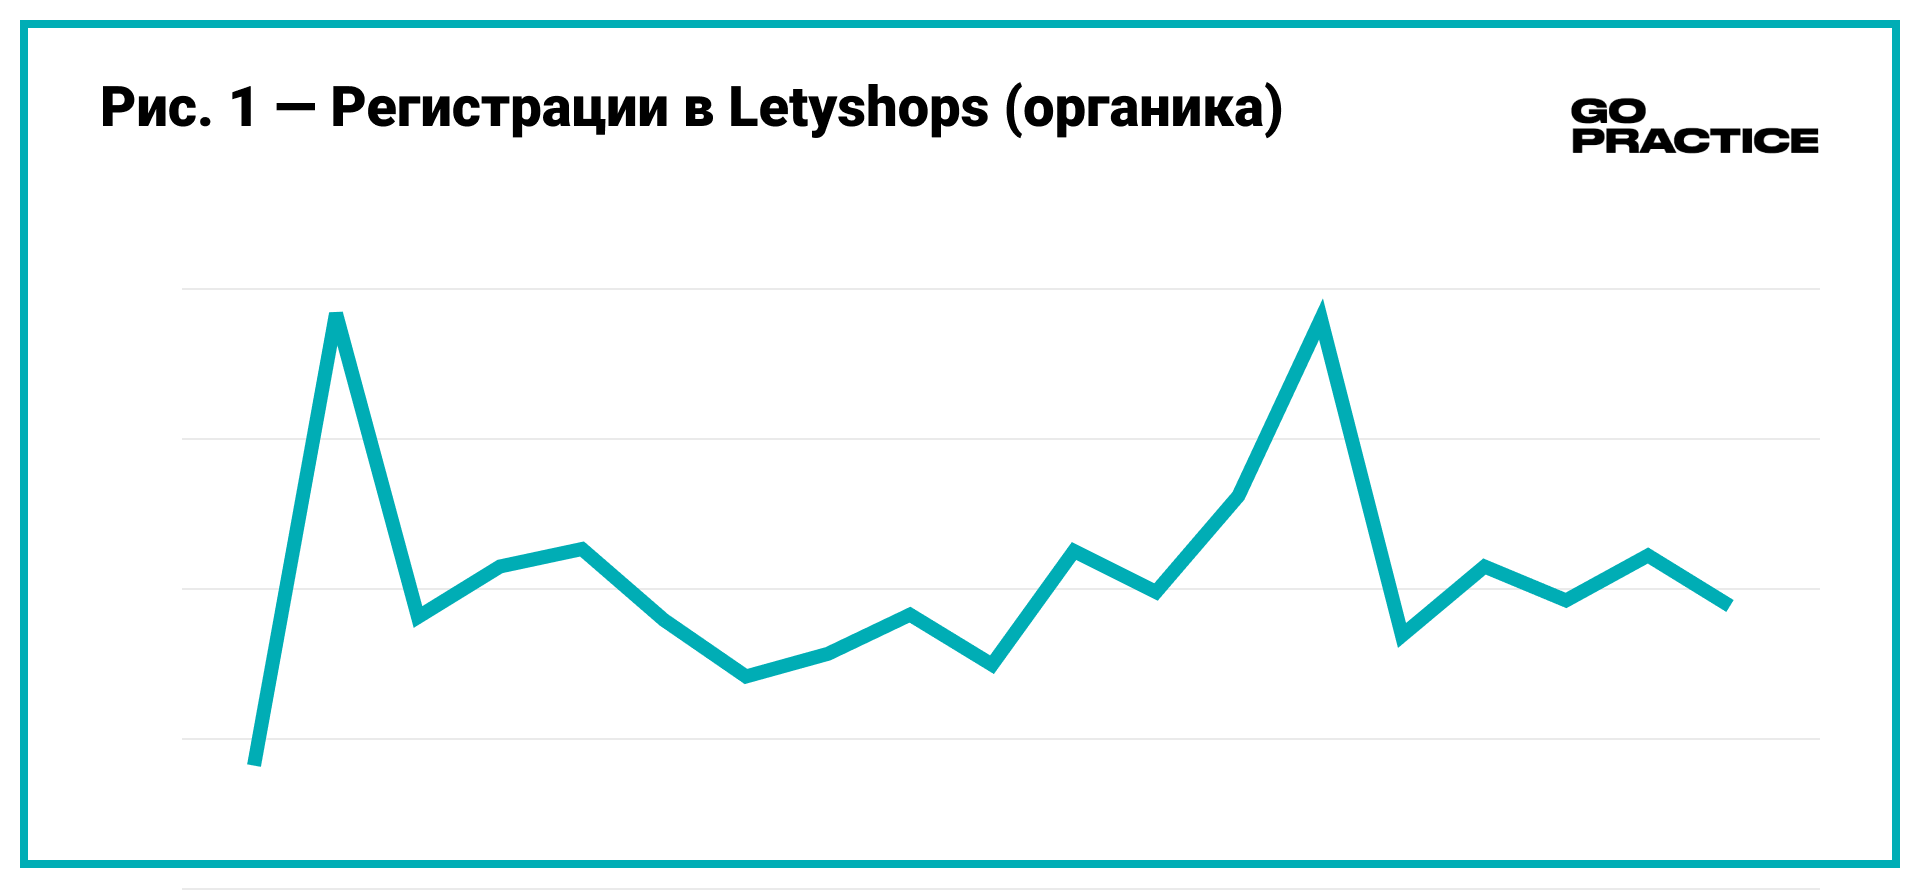 Регистрации в Letyshops. Органика